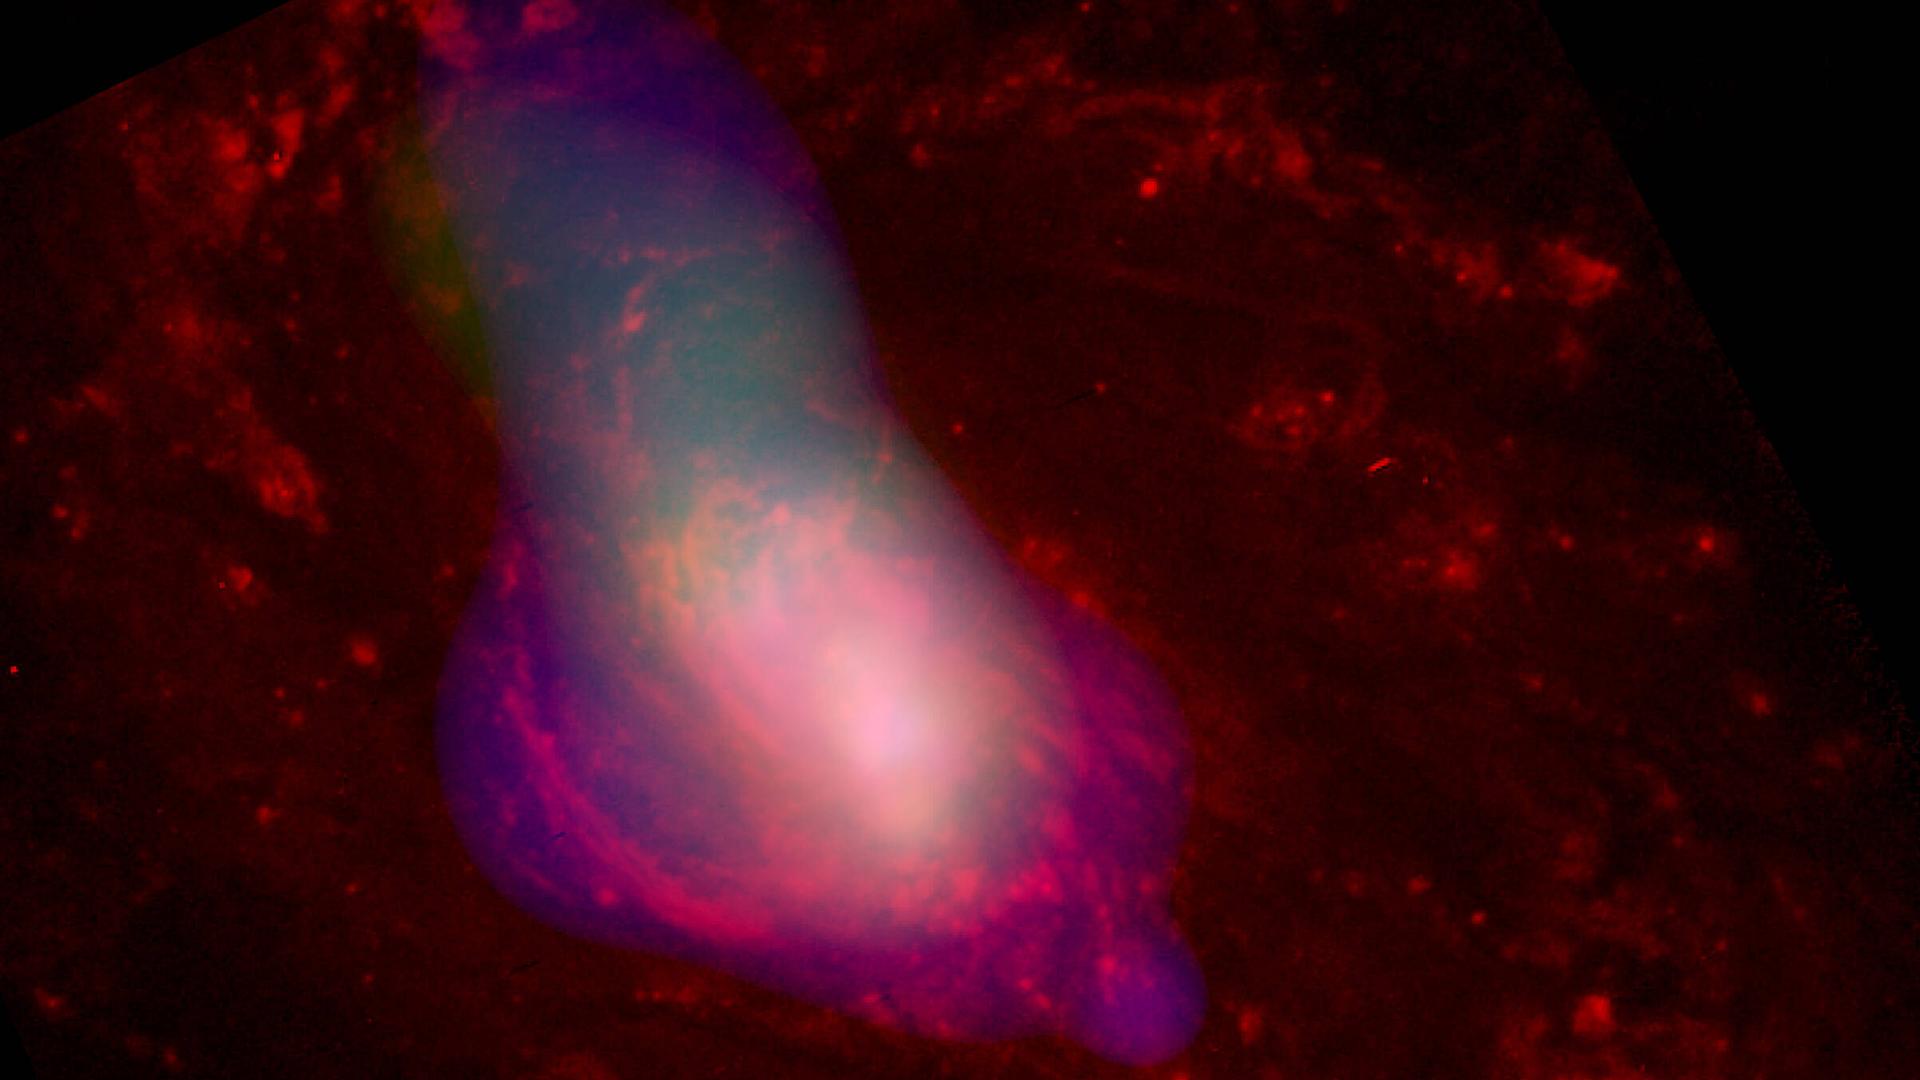 Ein 2003 vom Chandra-Teleskop aufgenommenes Bild zeigt heißes Gas, das mit einer durchschnittlichen Geschwindigkeit von etwa einer Million Meilen pro Stunde von einem zentralen supermassereichen schwarzen Loch weggeblasen wird.